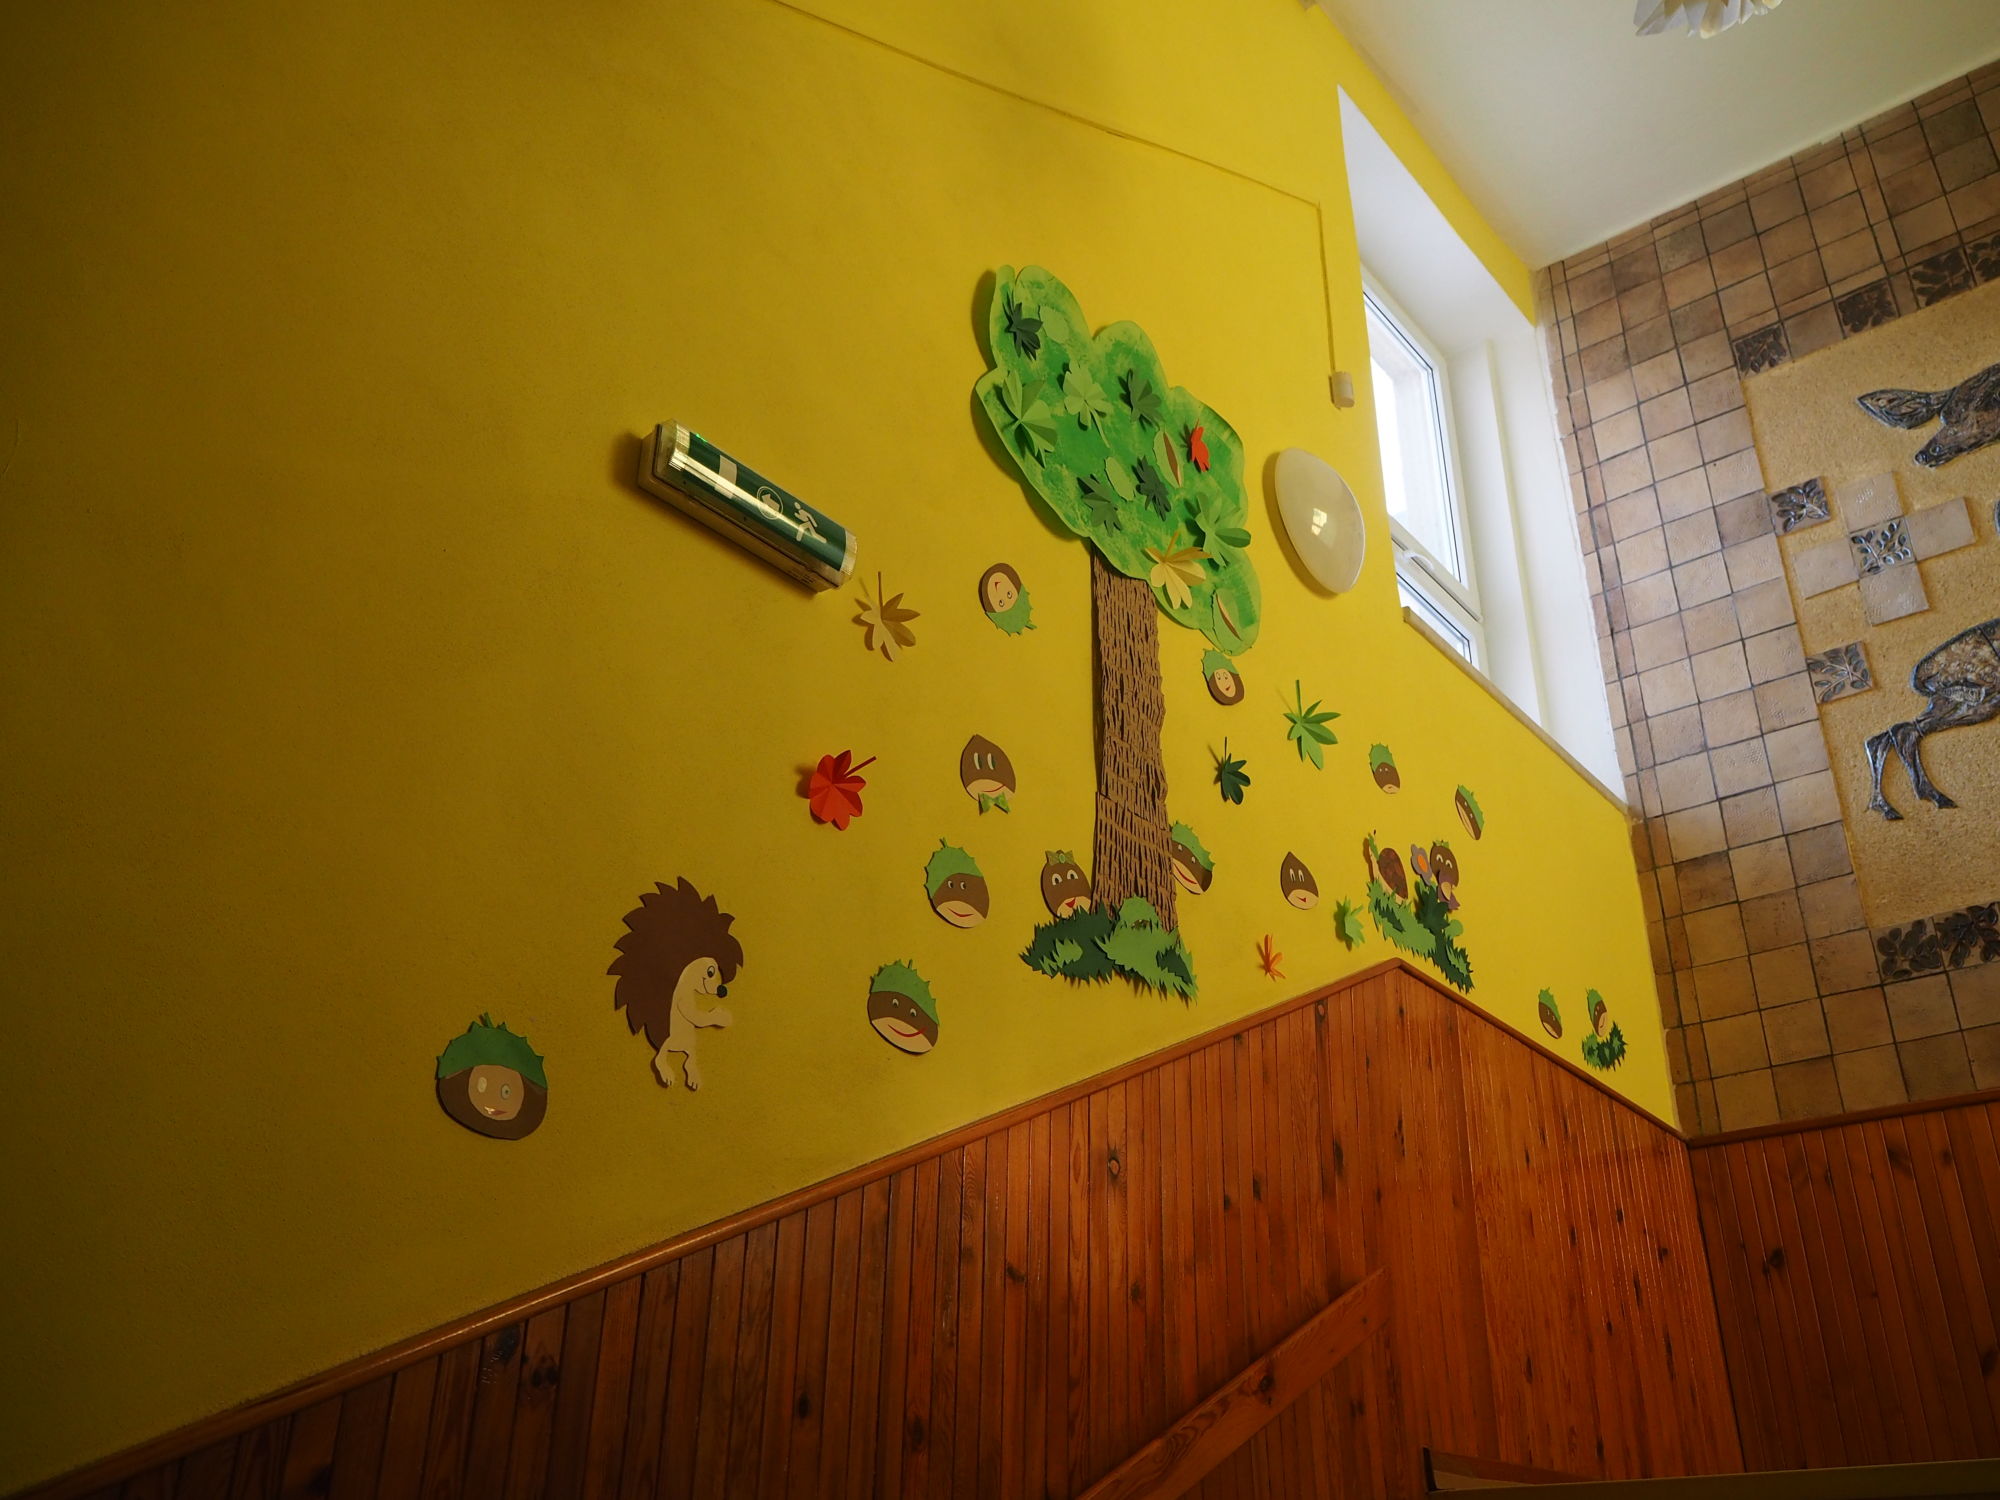 Schody do prvního patra - na stěně je umístěn strom a pod ním obrázky kaštanů.